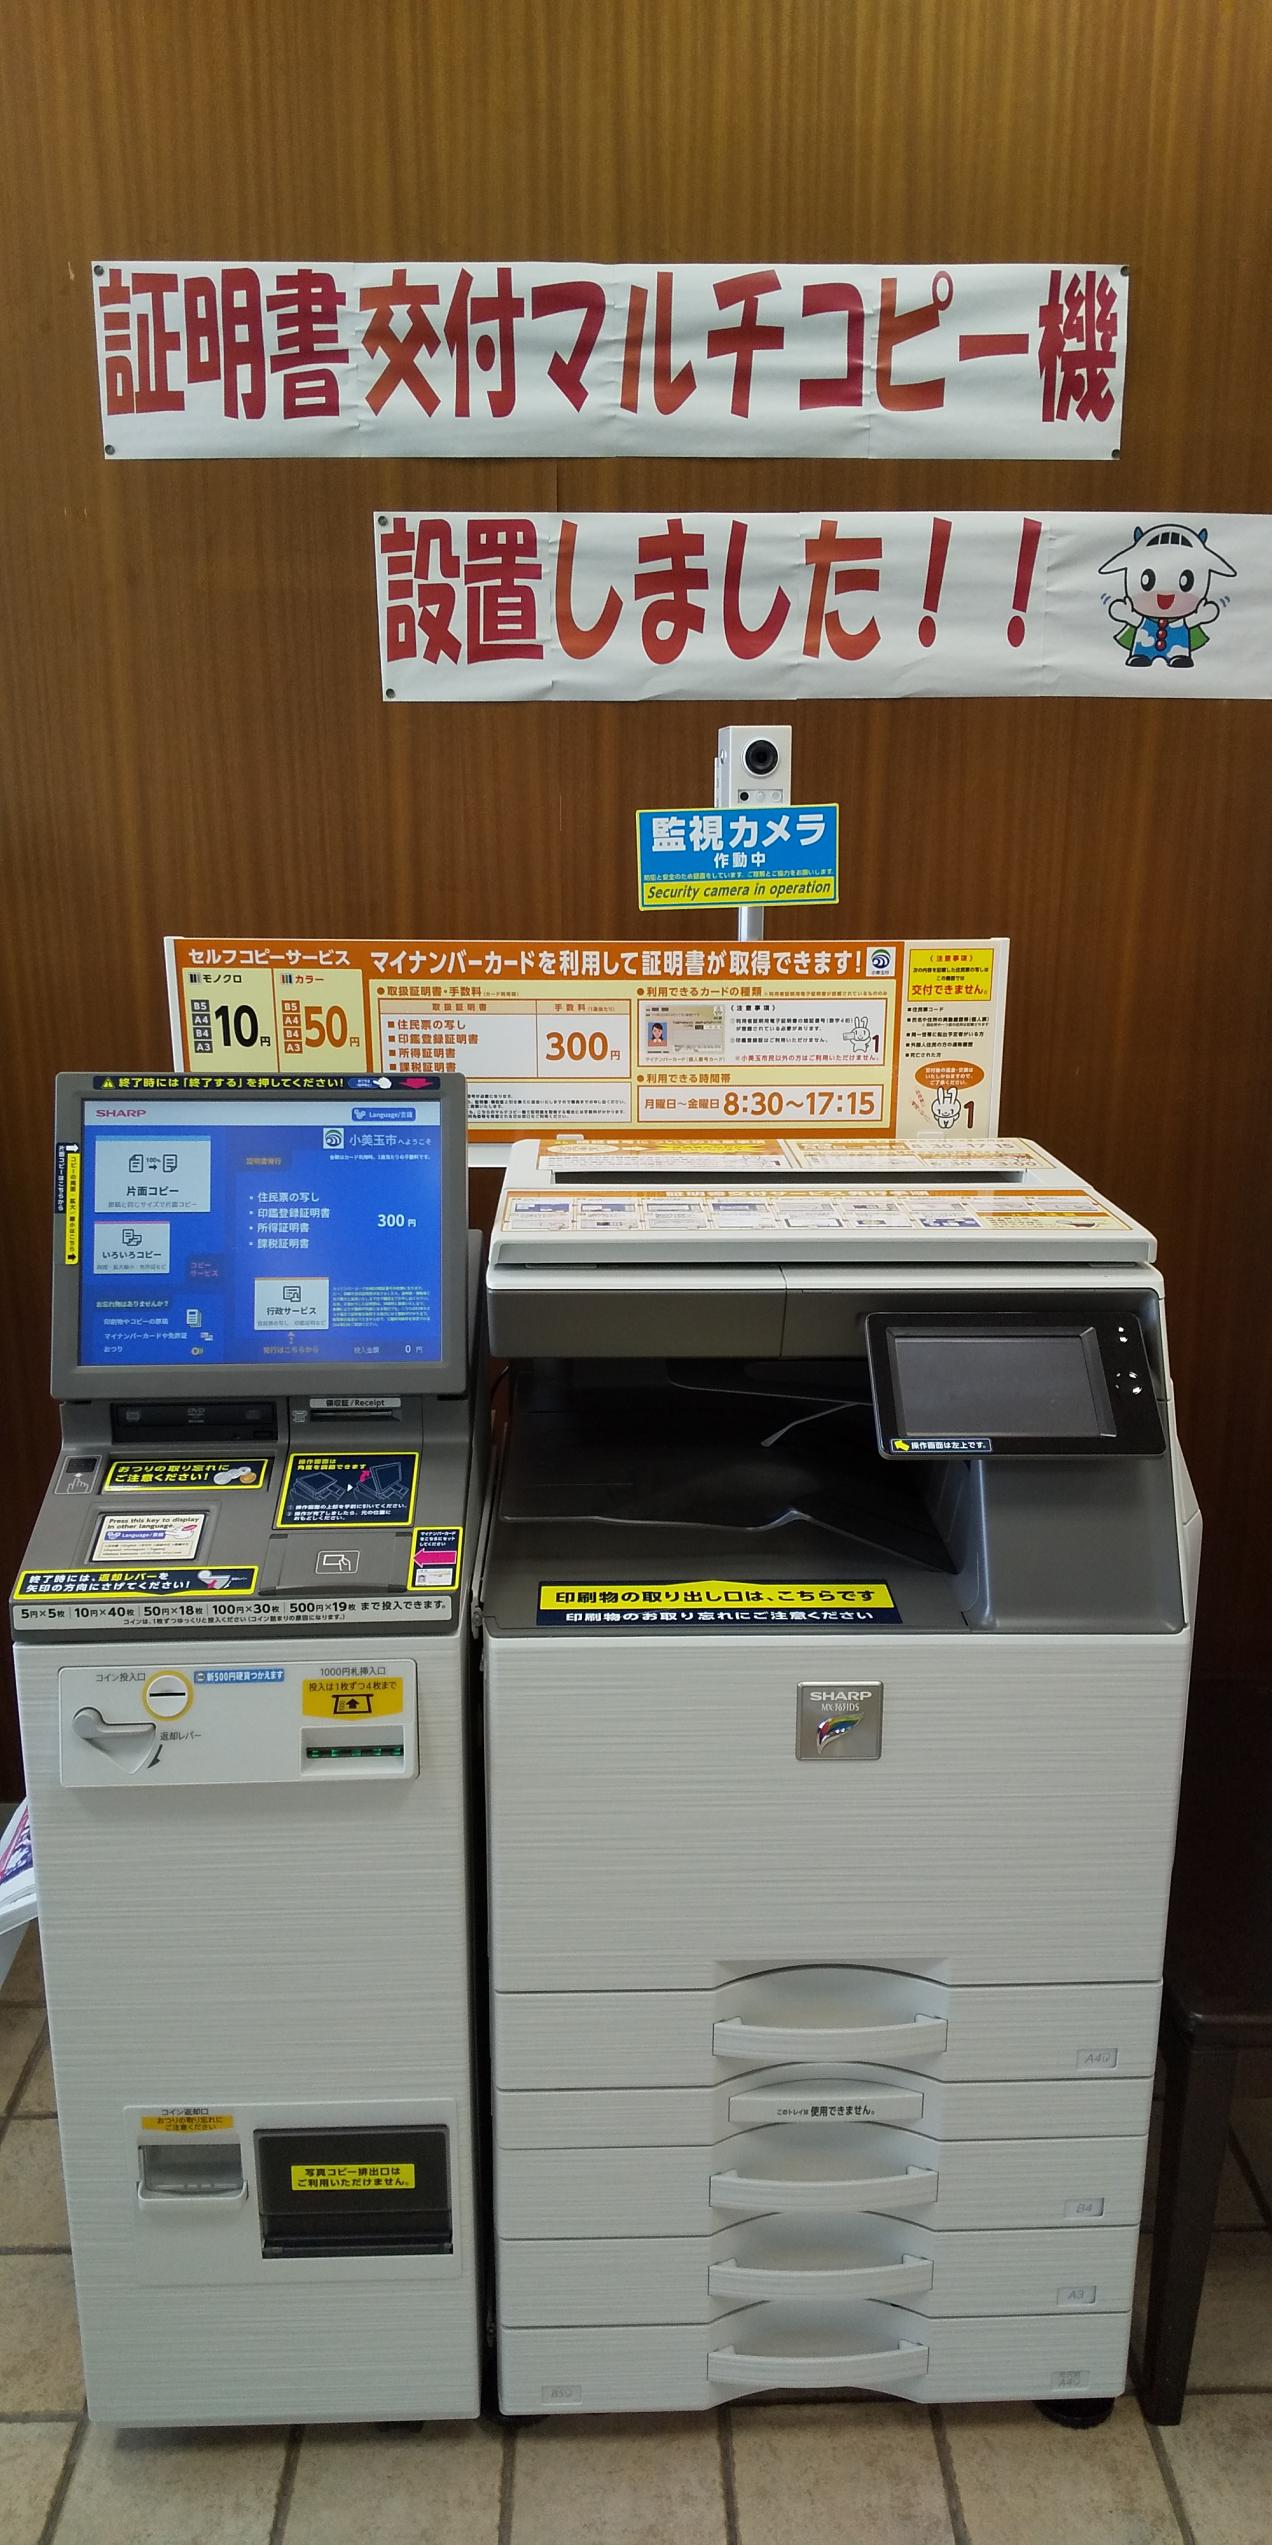 小川総合支所内に設置してあるマルチコピー機